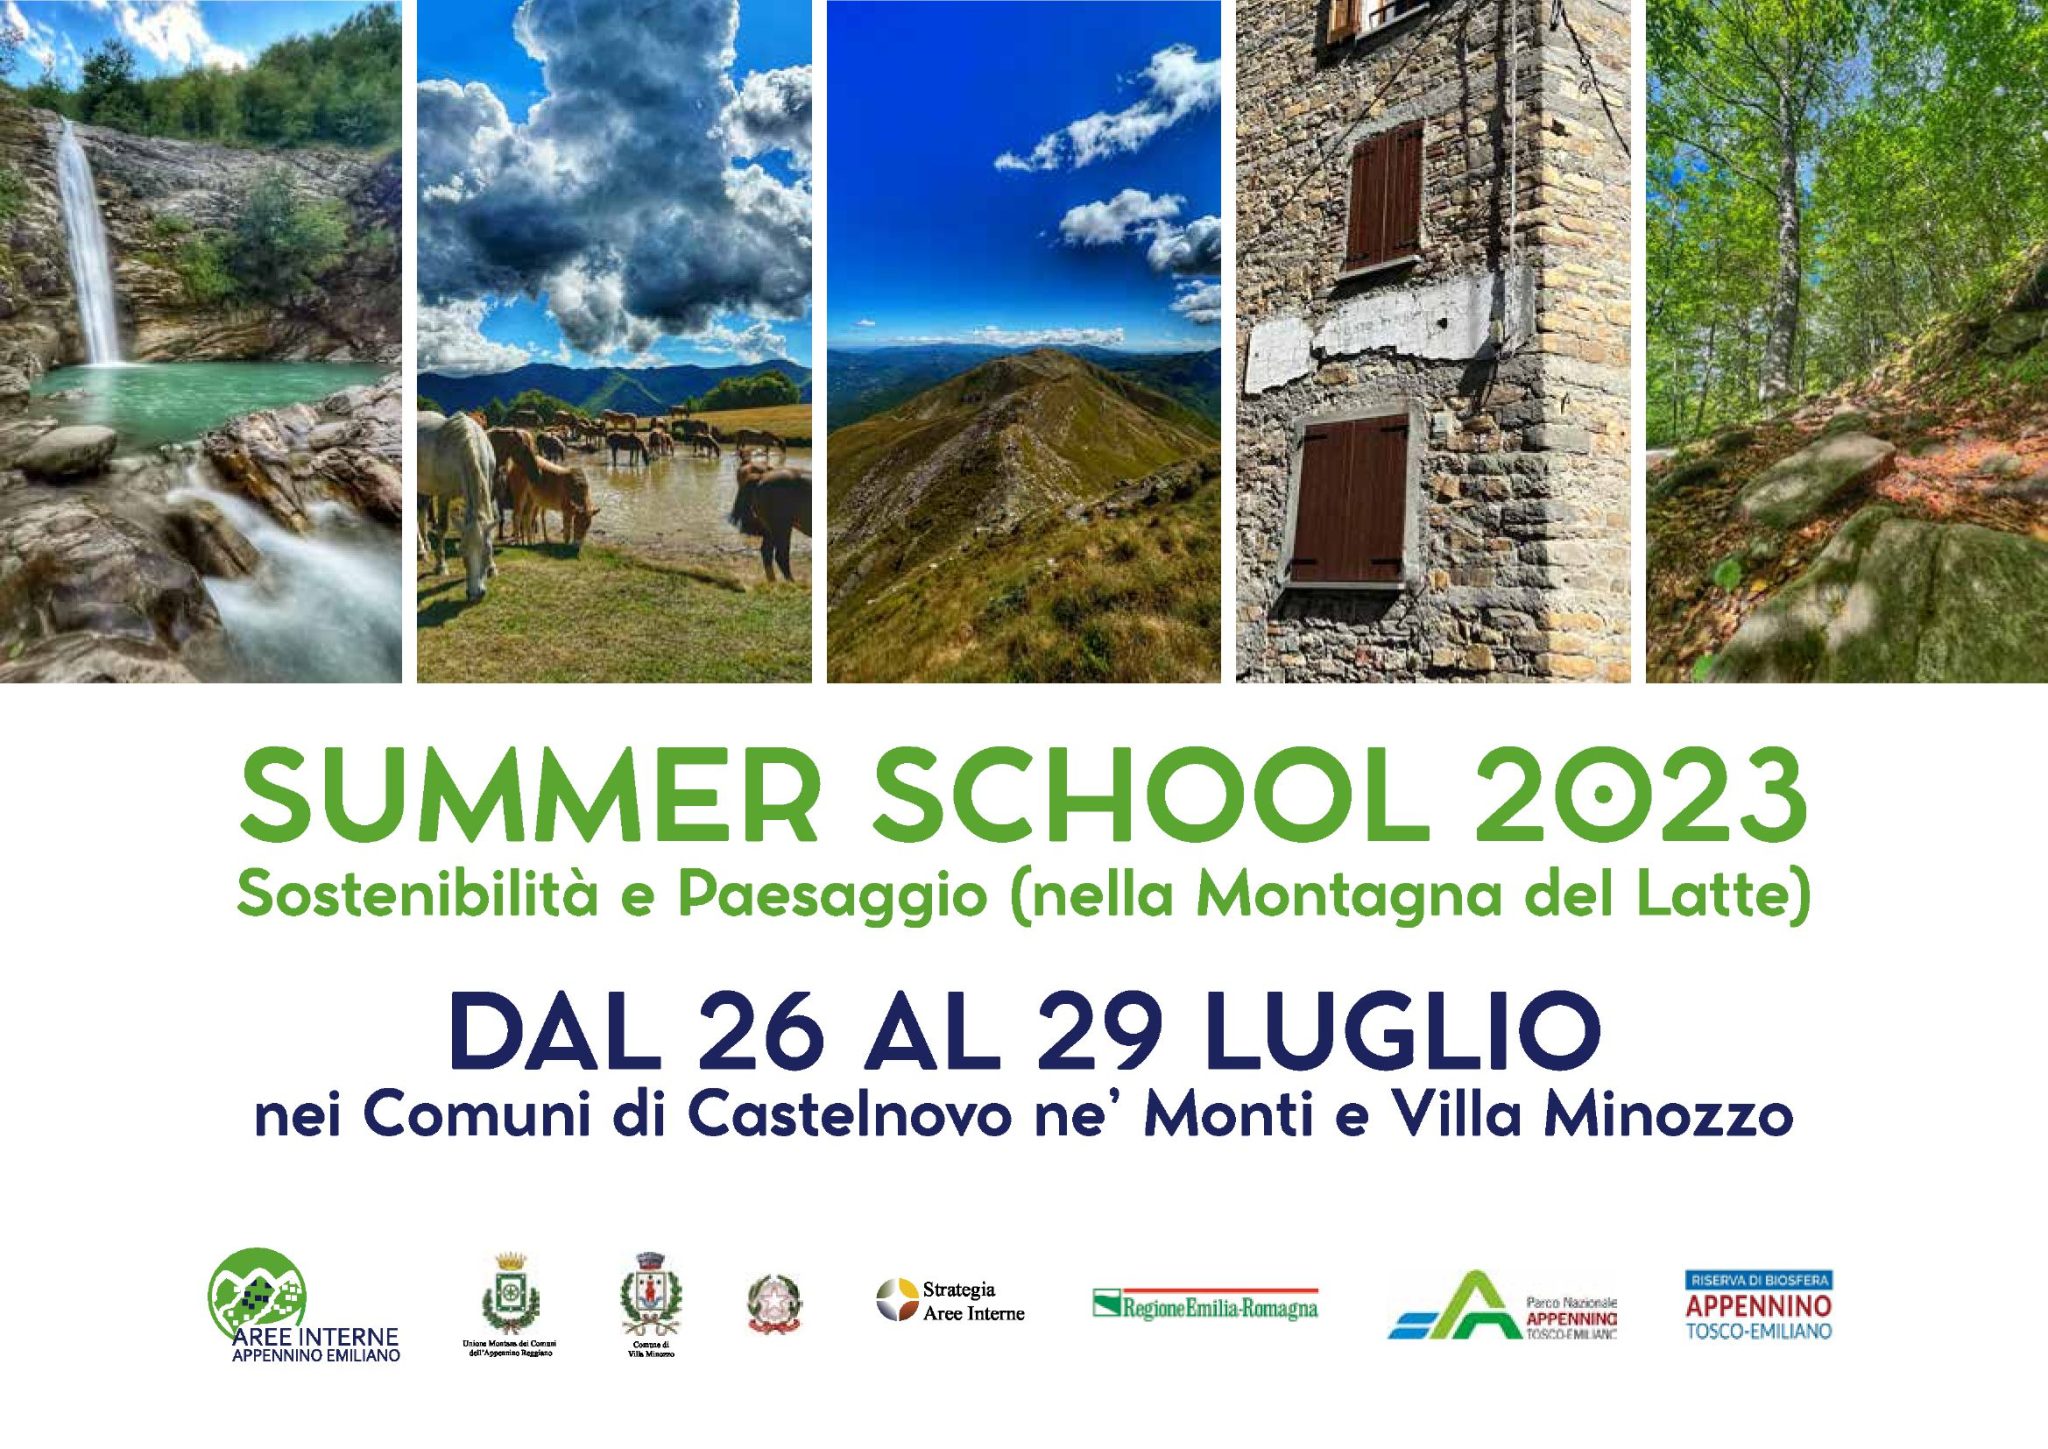 Summer school de La Montagna del Latte dedicata a Sostenibilità e Paesaggio.